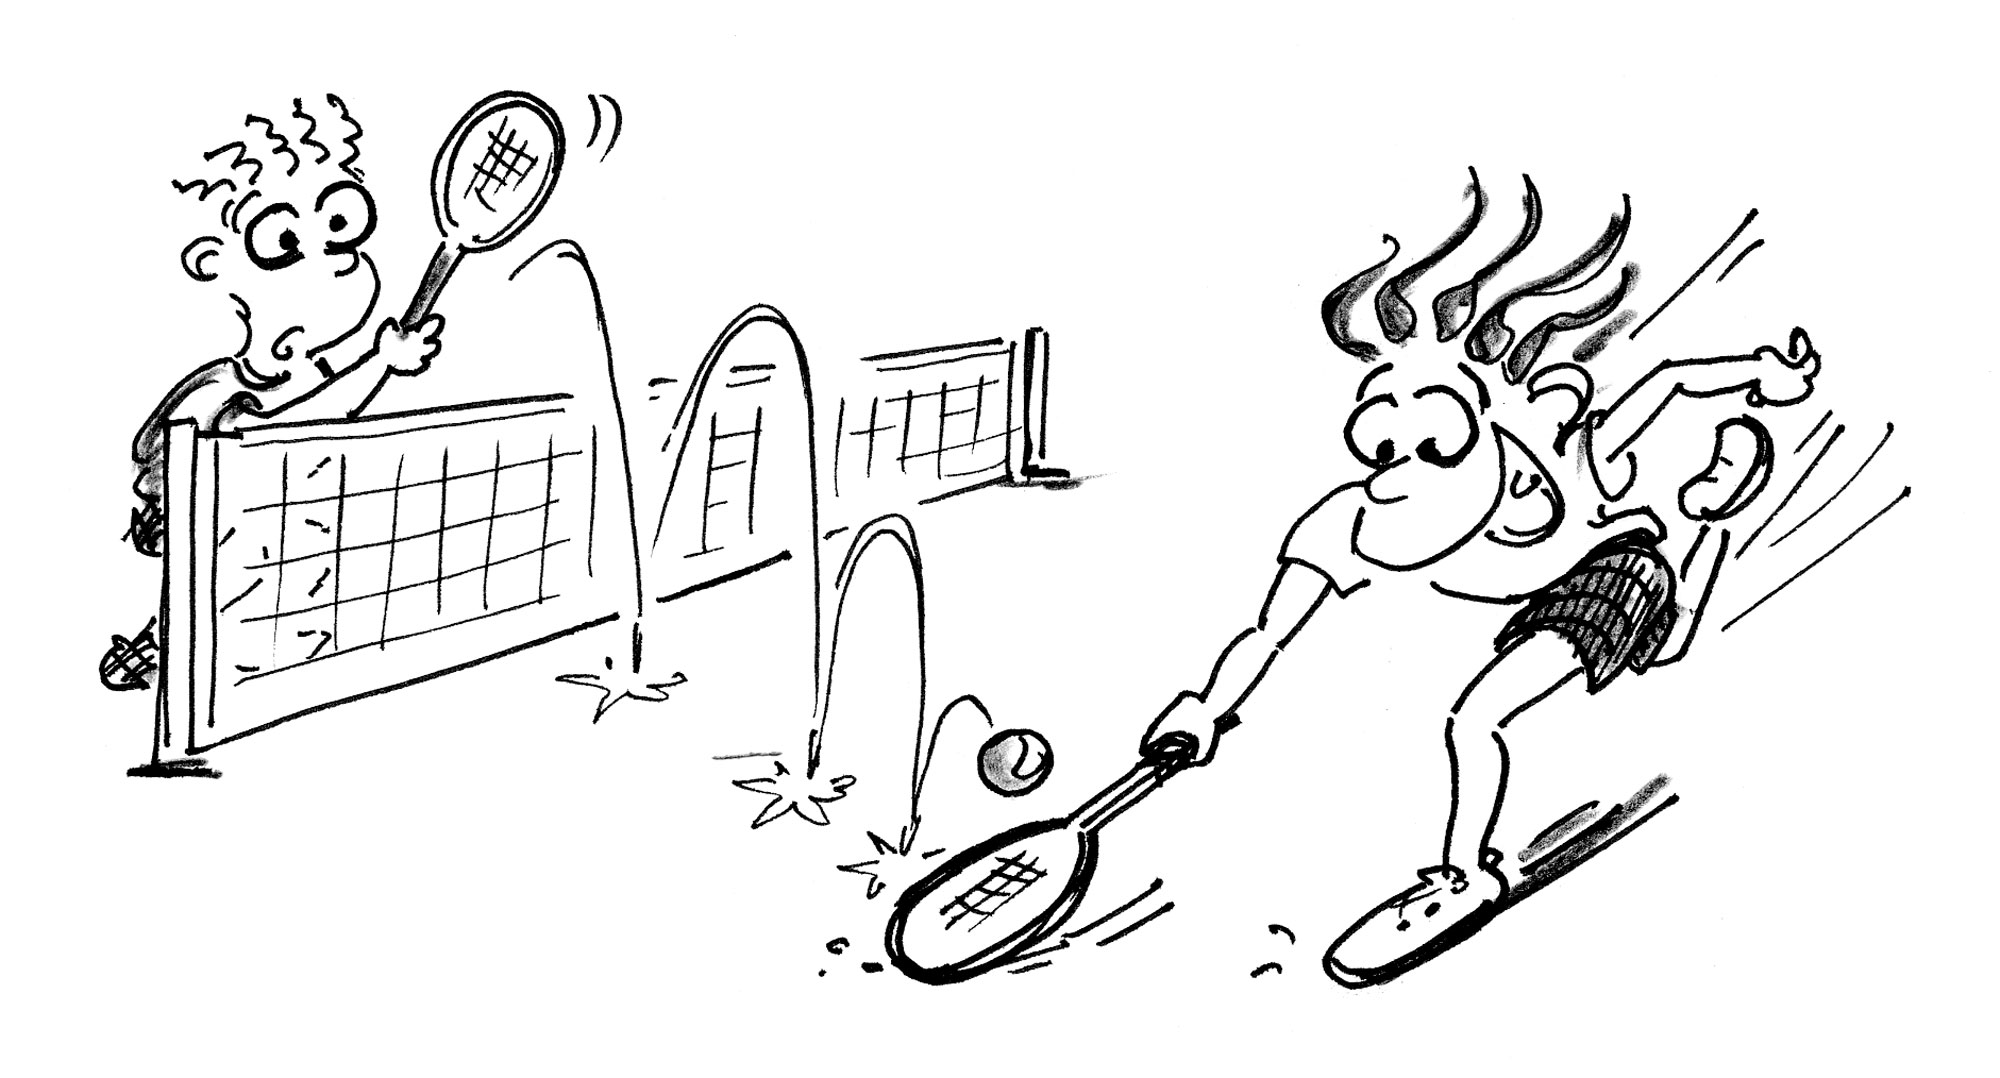 Jeux de renvoi avec enfants – Tennis: La balle ne meurt jamais